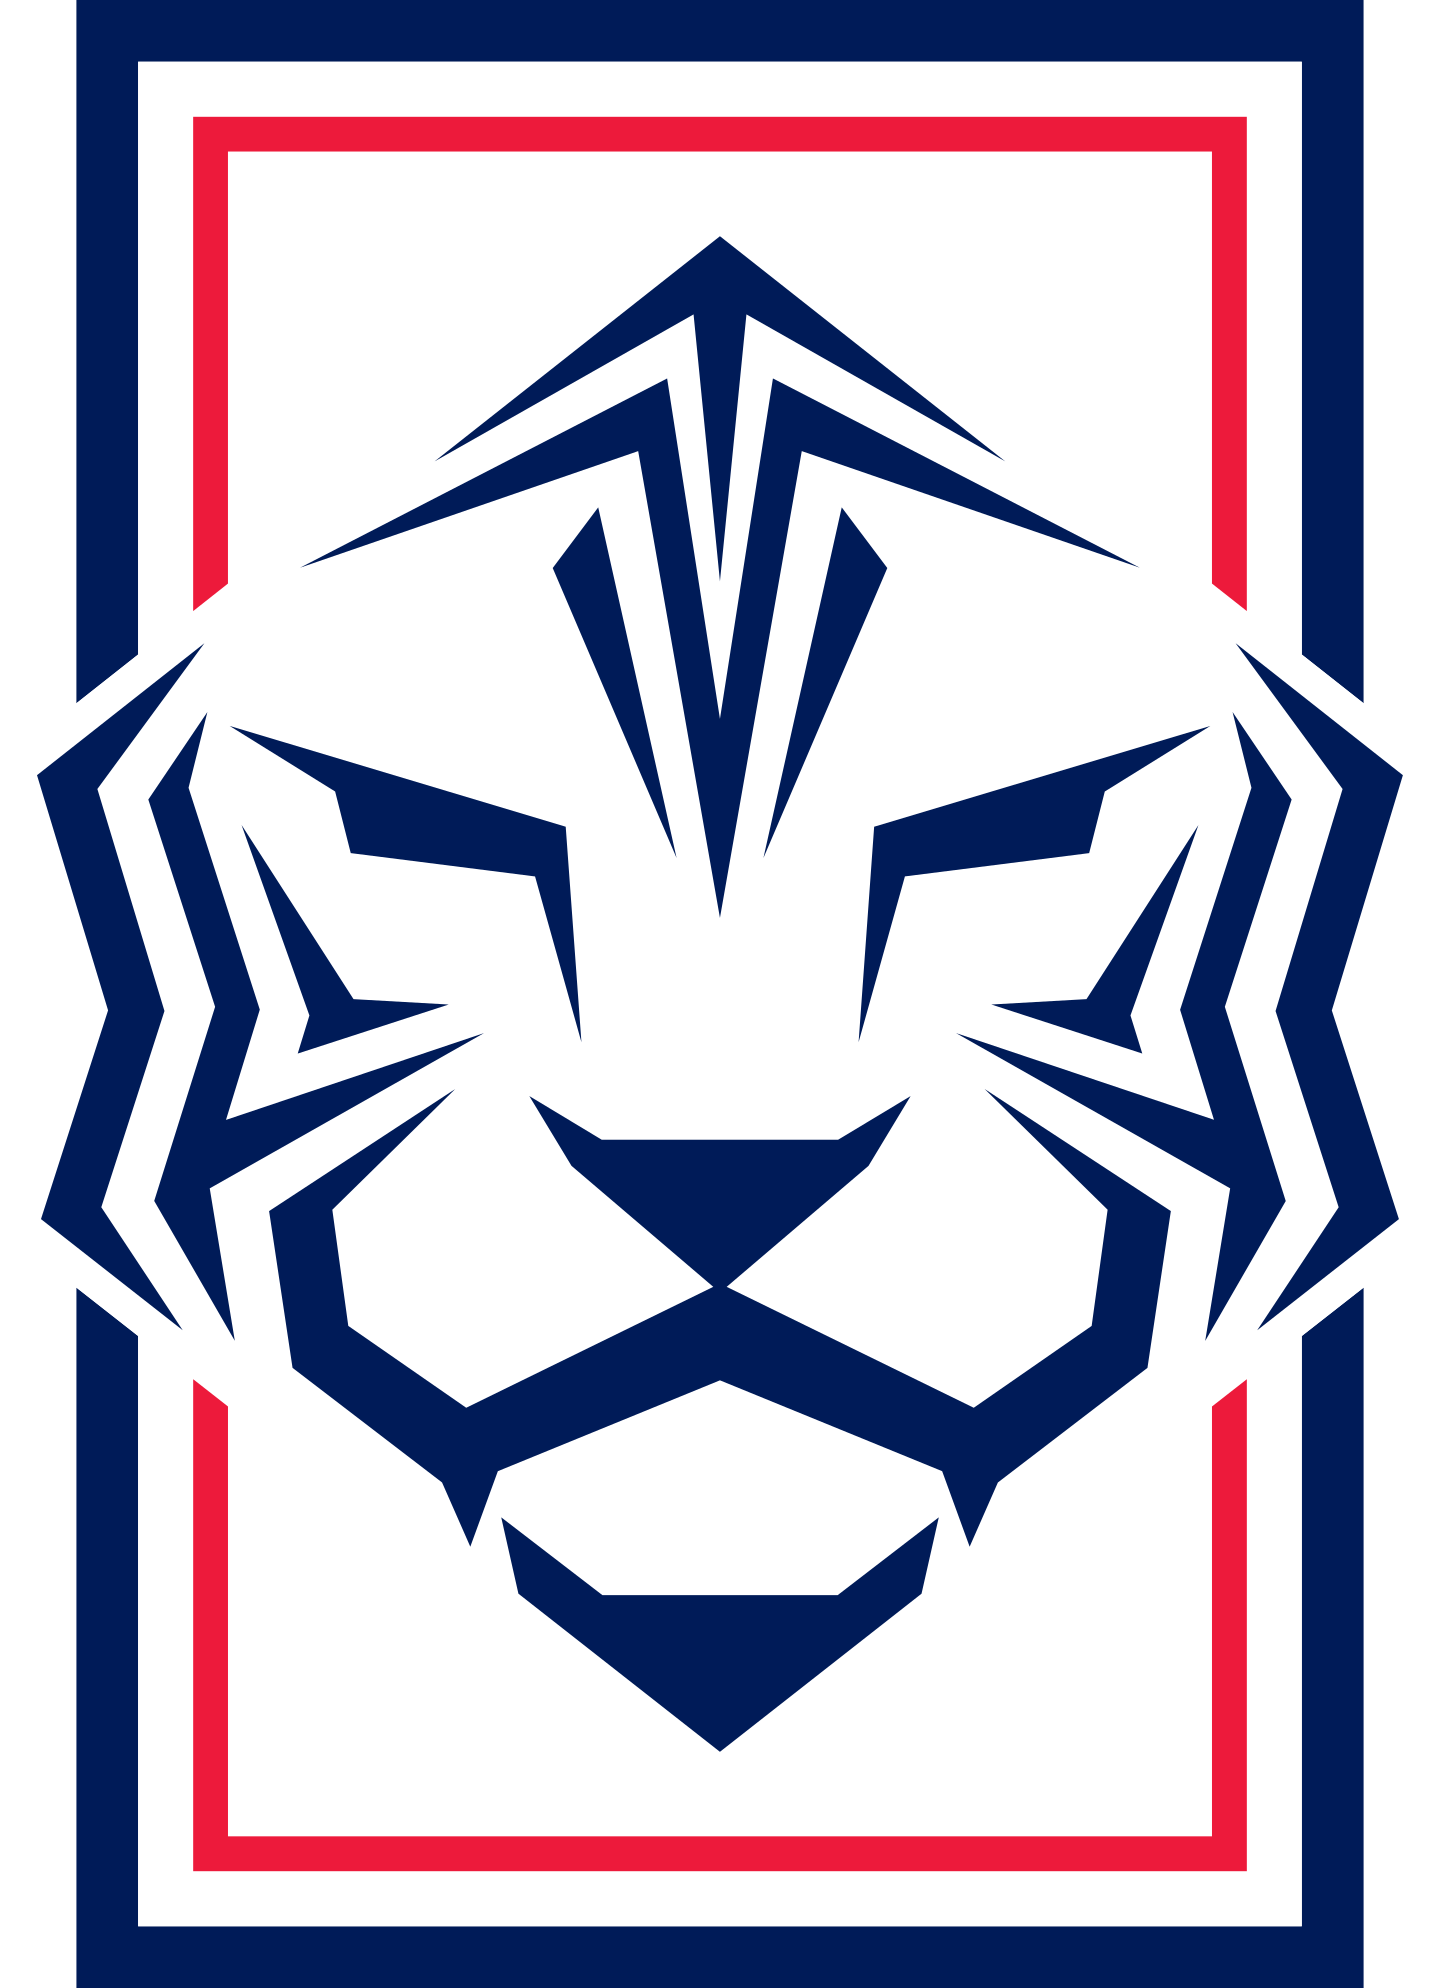 South Korea National Football Team Logo.